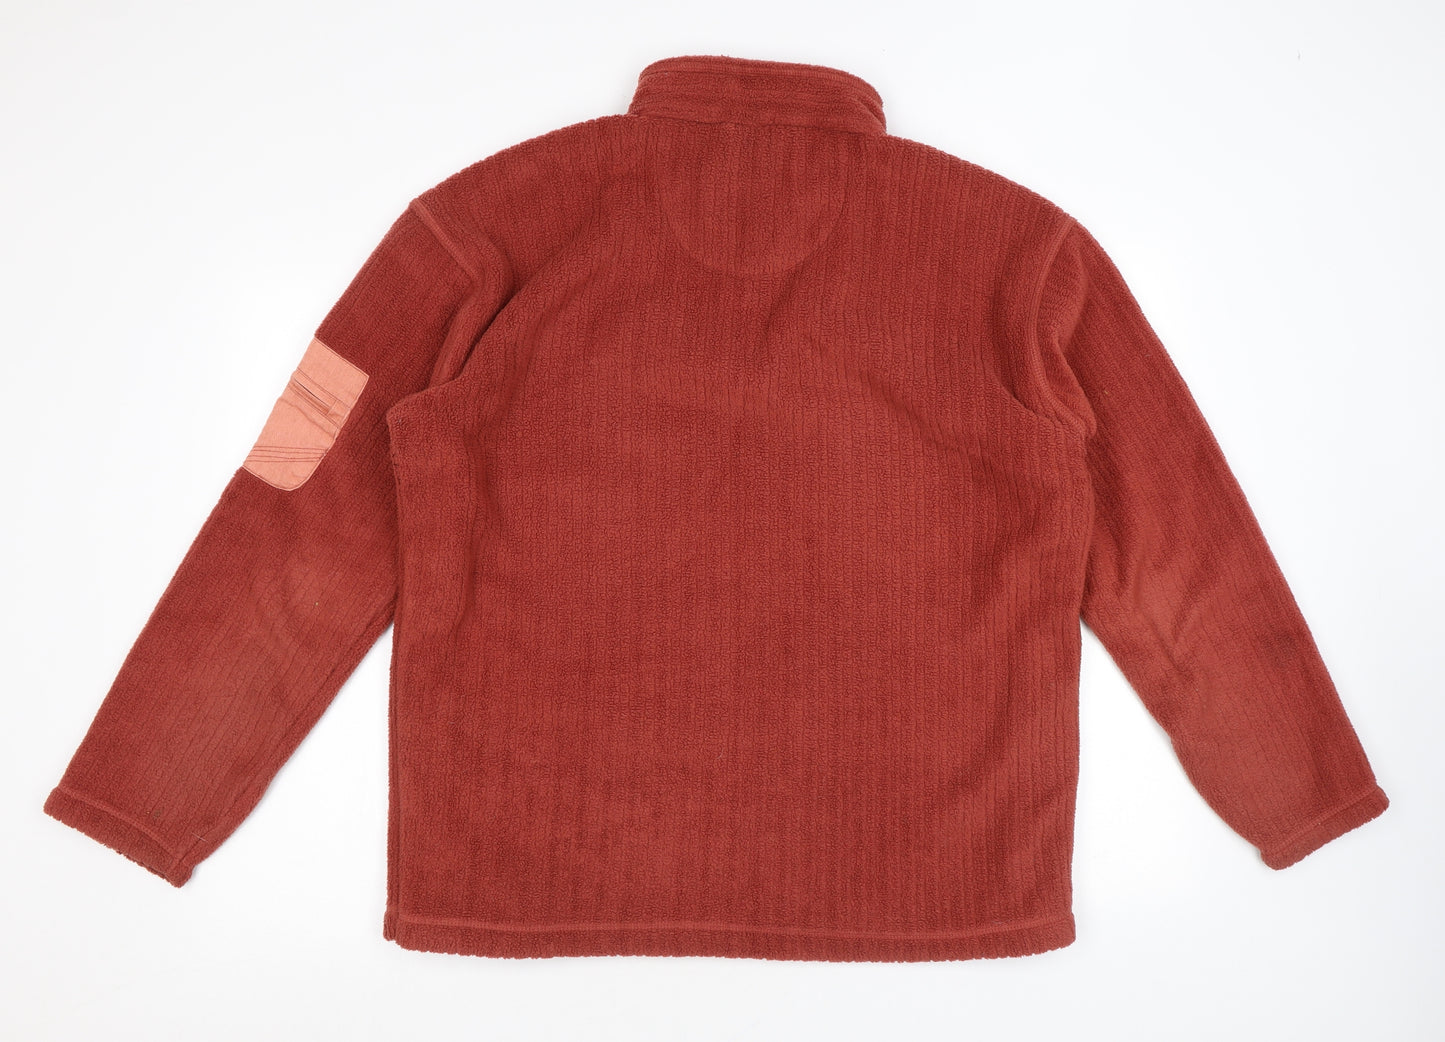 Regatta Womens Red Polyester Pullover Sweatshirt Size XL Zip